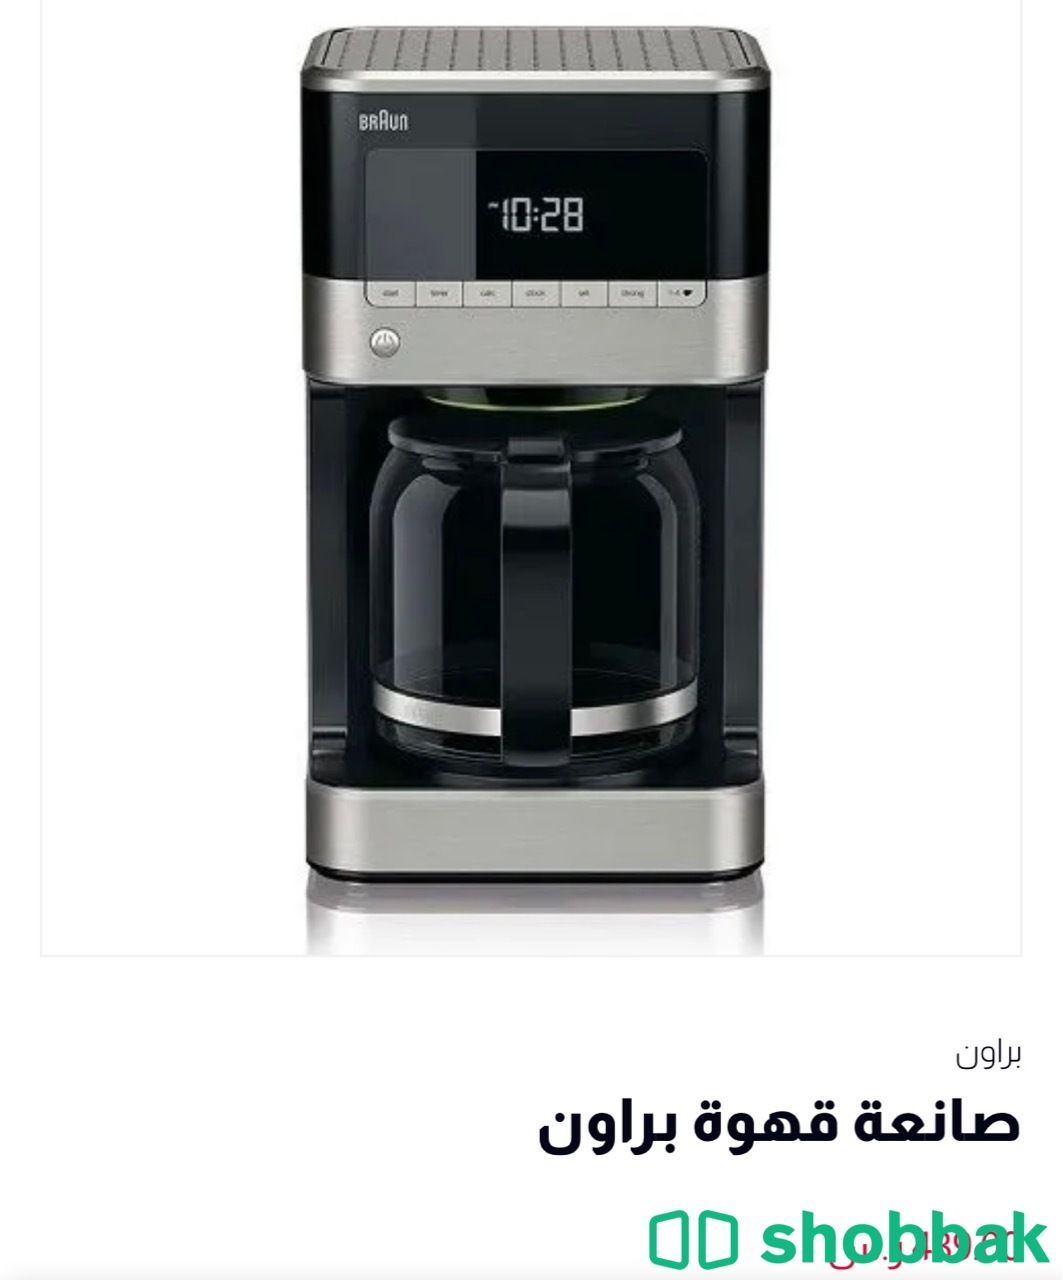 آلة قهوة بروان Shobbak Saudi Arabia